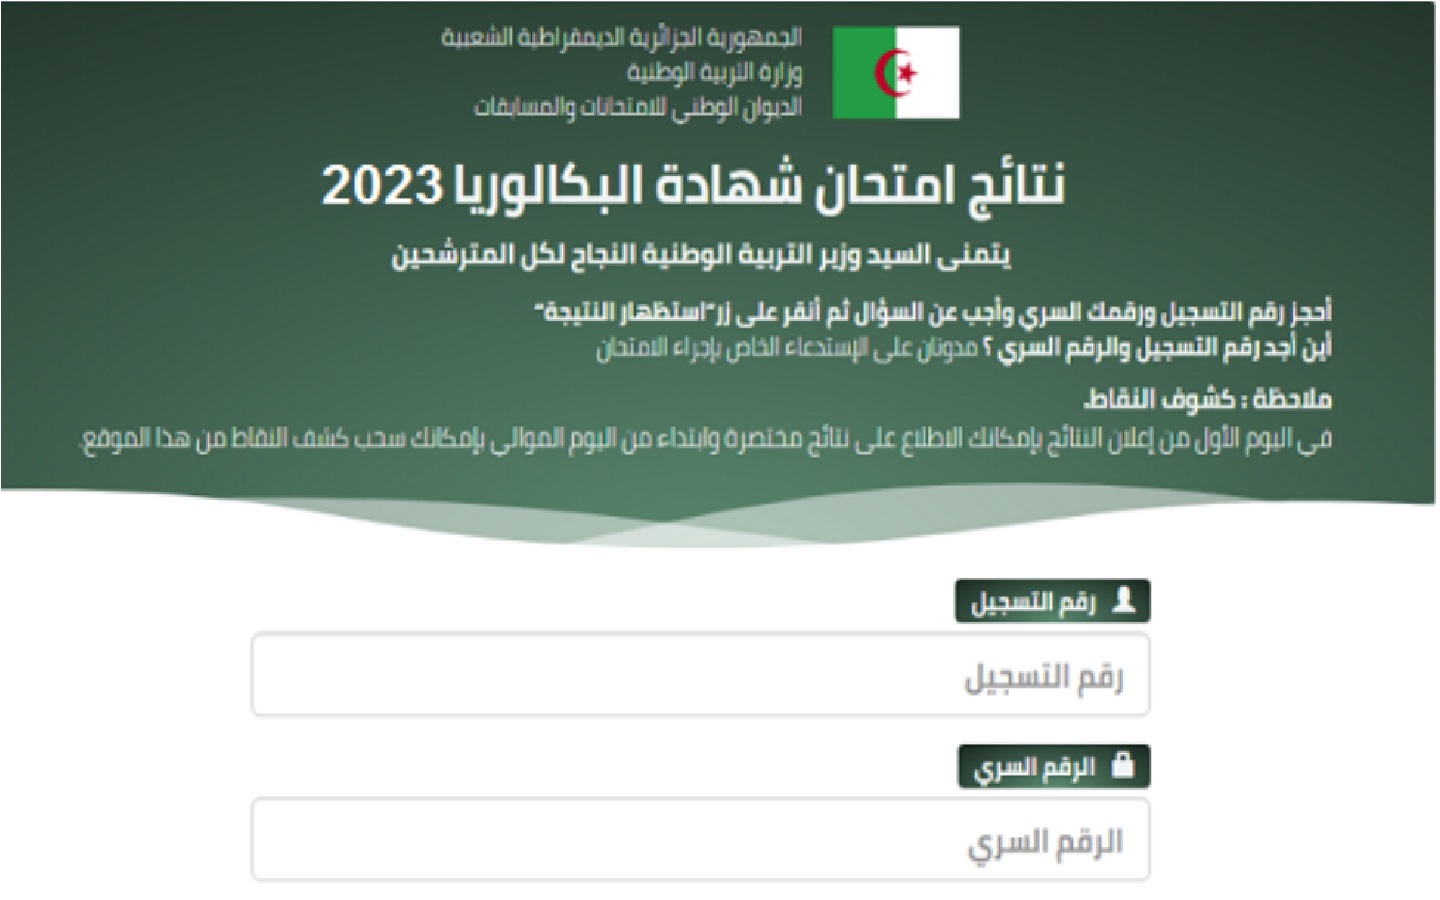 نتائج البكالوريا 2023 الجزائر